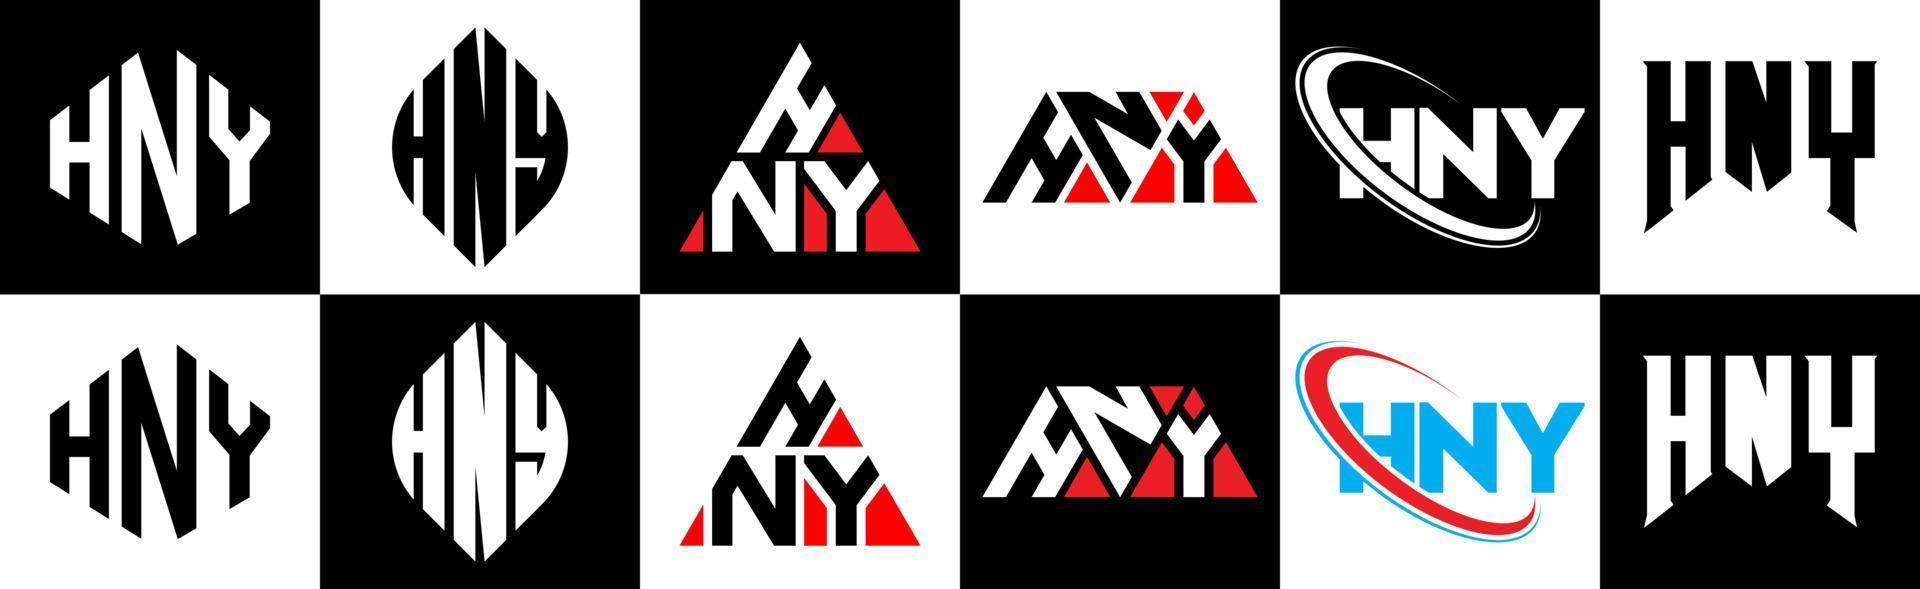 Hny-Buchstaben-Logo-Design in sechs Stilen. hny polygon, kreis, dreieck, sechseck, flacher und einfacher stil mit schwarz-weißem buchstabenlogo in einer zeichenfläche. hny minimalistisches und klassisches Logo vektor